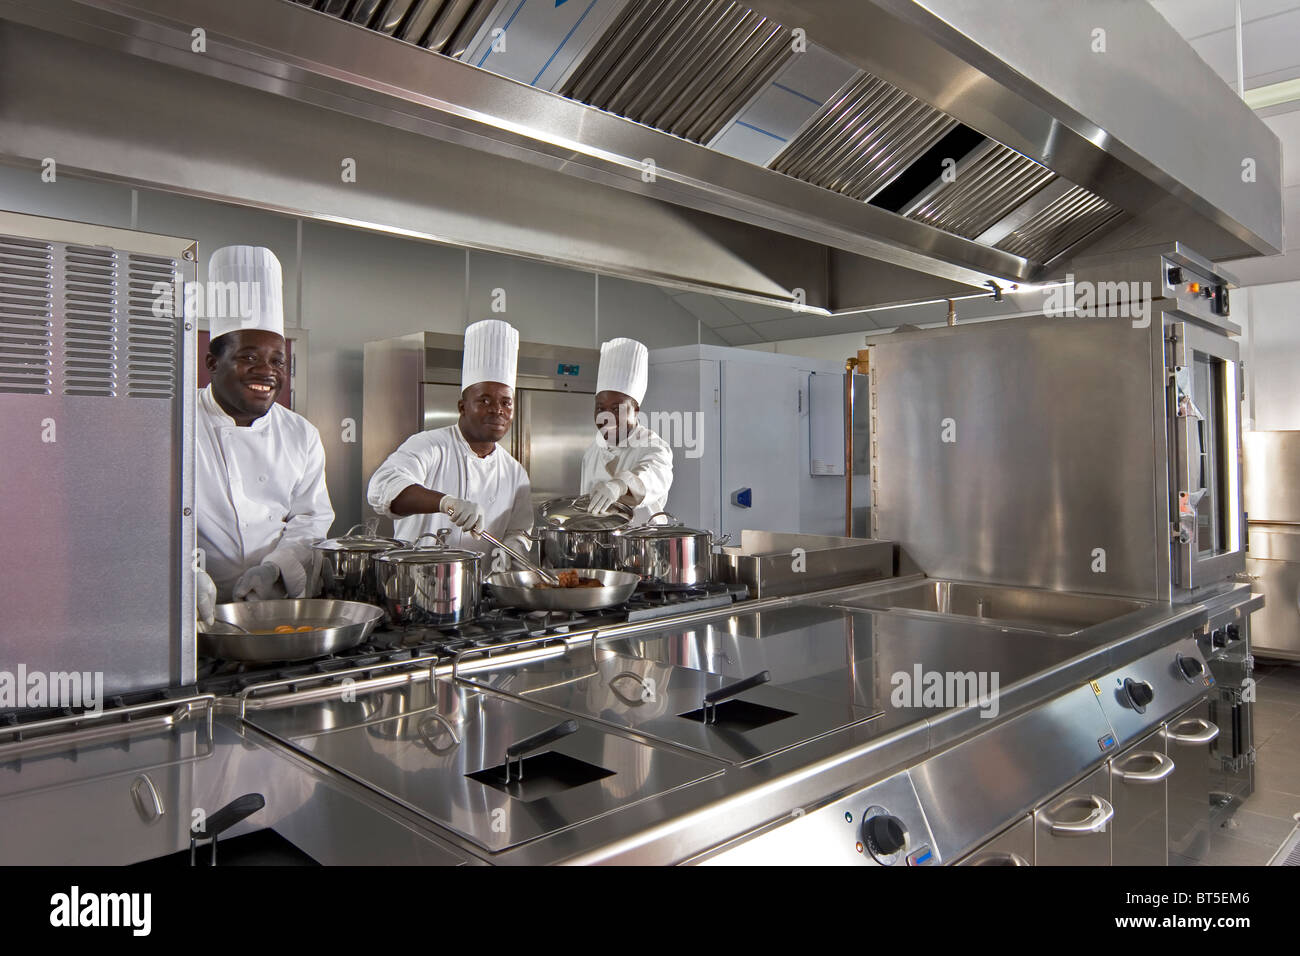 Luba Öl Freeport. Küche mit Köchen zubereiten und kochen in der Küche-Kantine Stockfoto